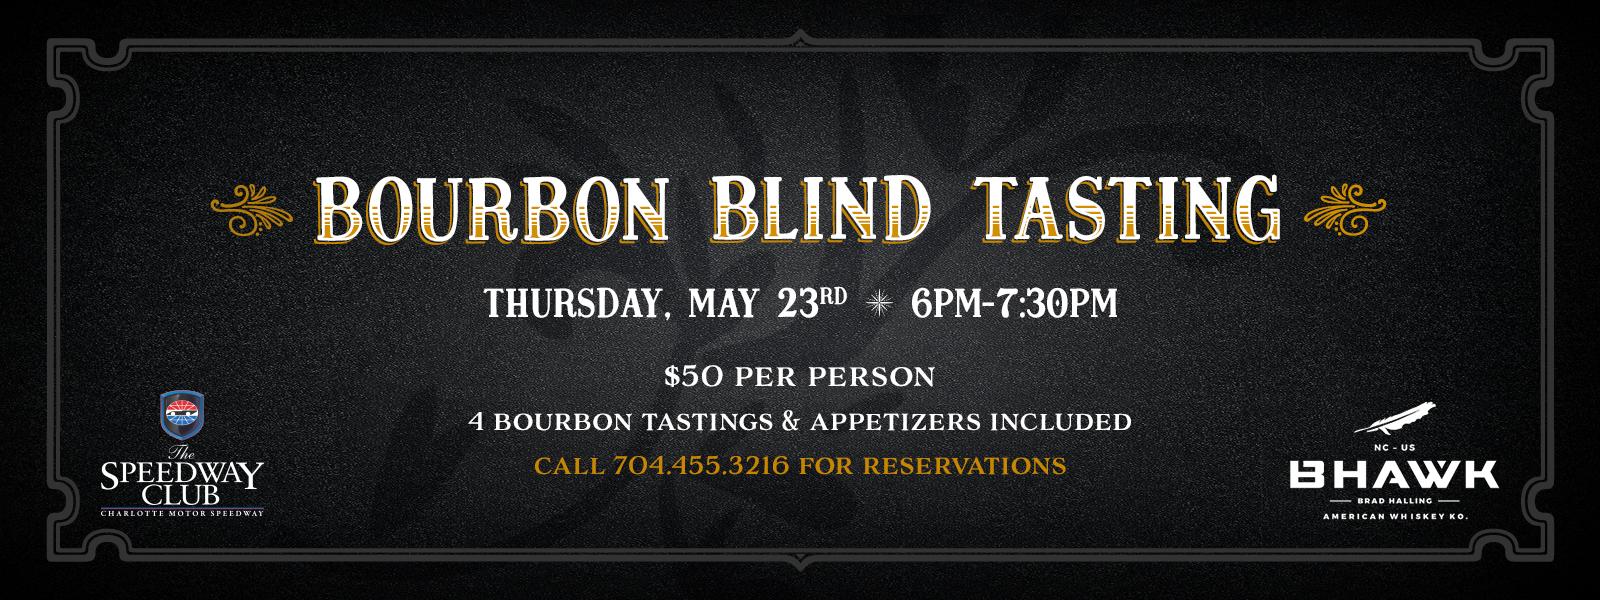 Bourbon Blind Tasting